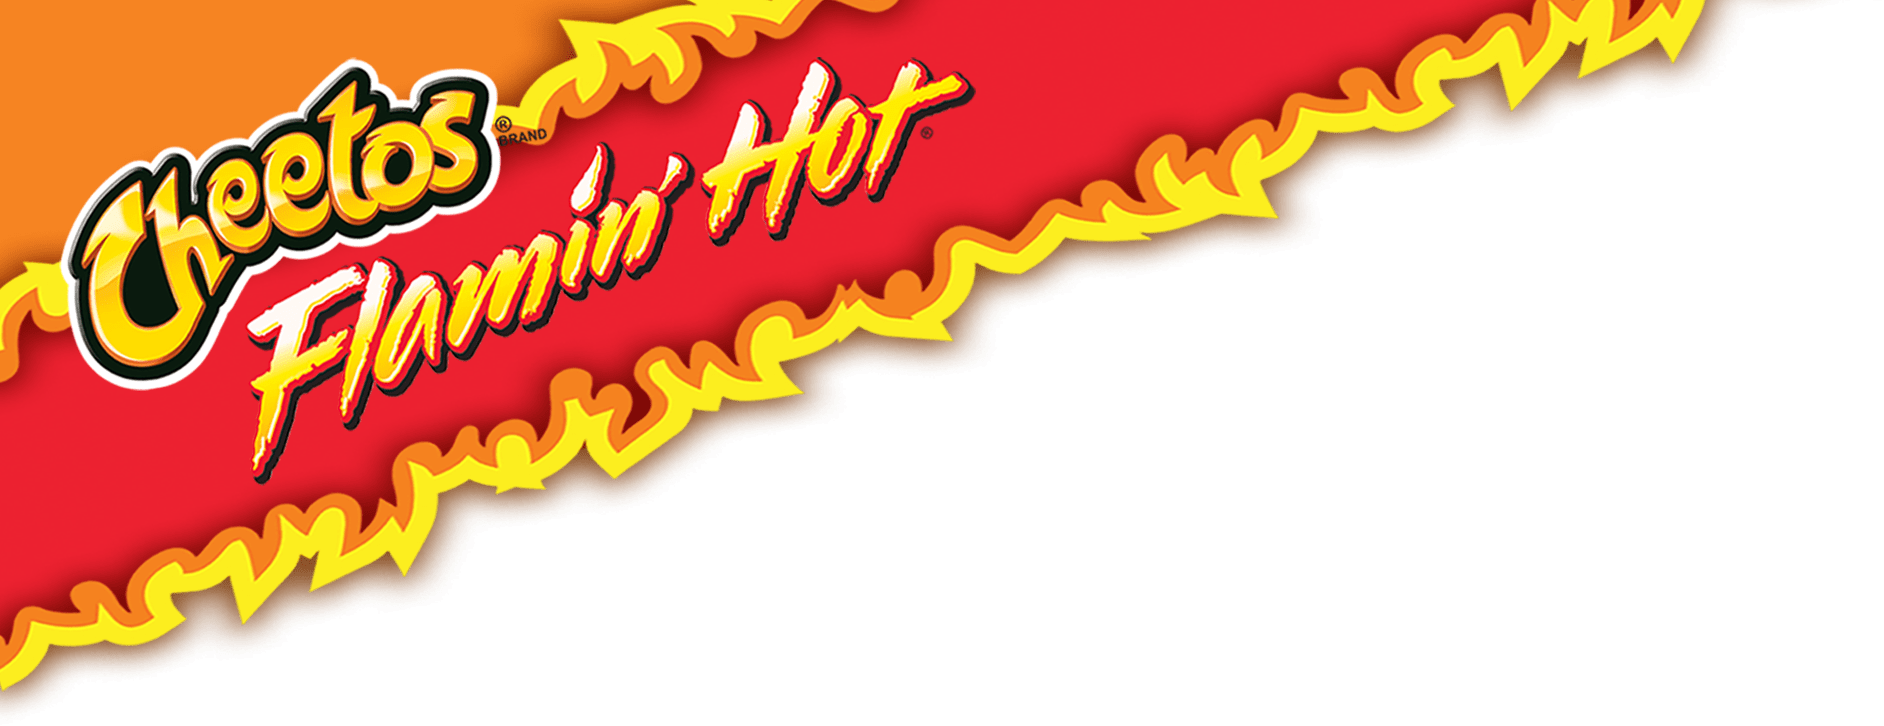 Hot Cheetos Transparent Image